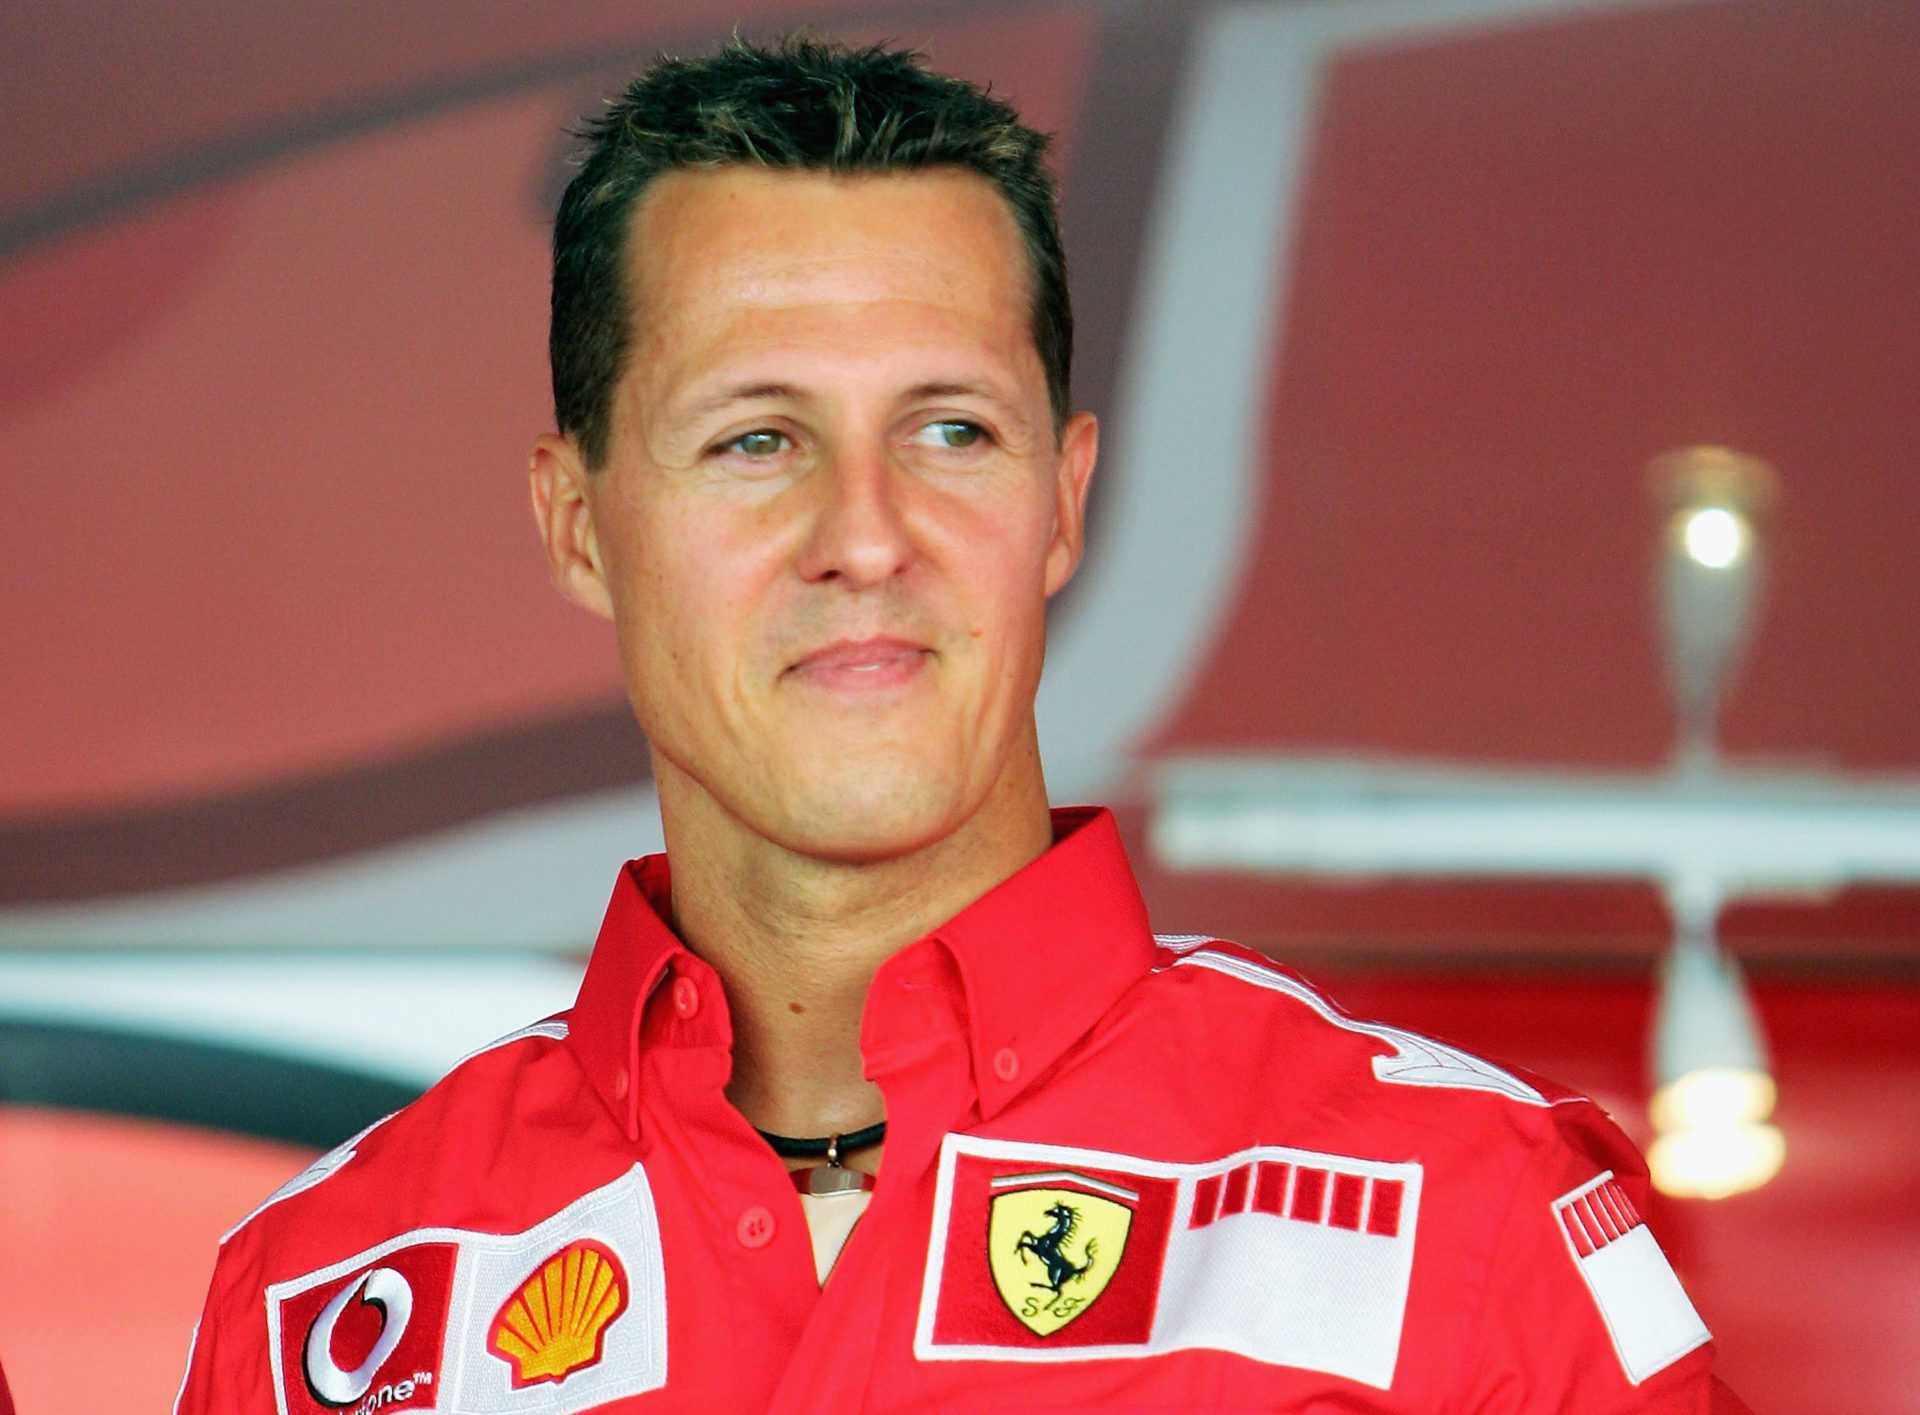 "Je n'étais vraiment pas désolé" - Massa révèle qu'il a été "politique" contre Michael Schumacher chez Ferrari